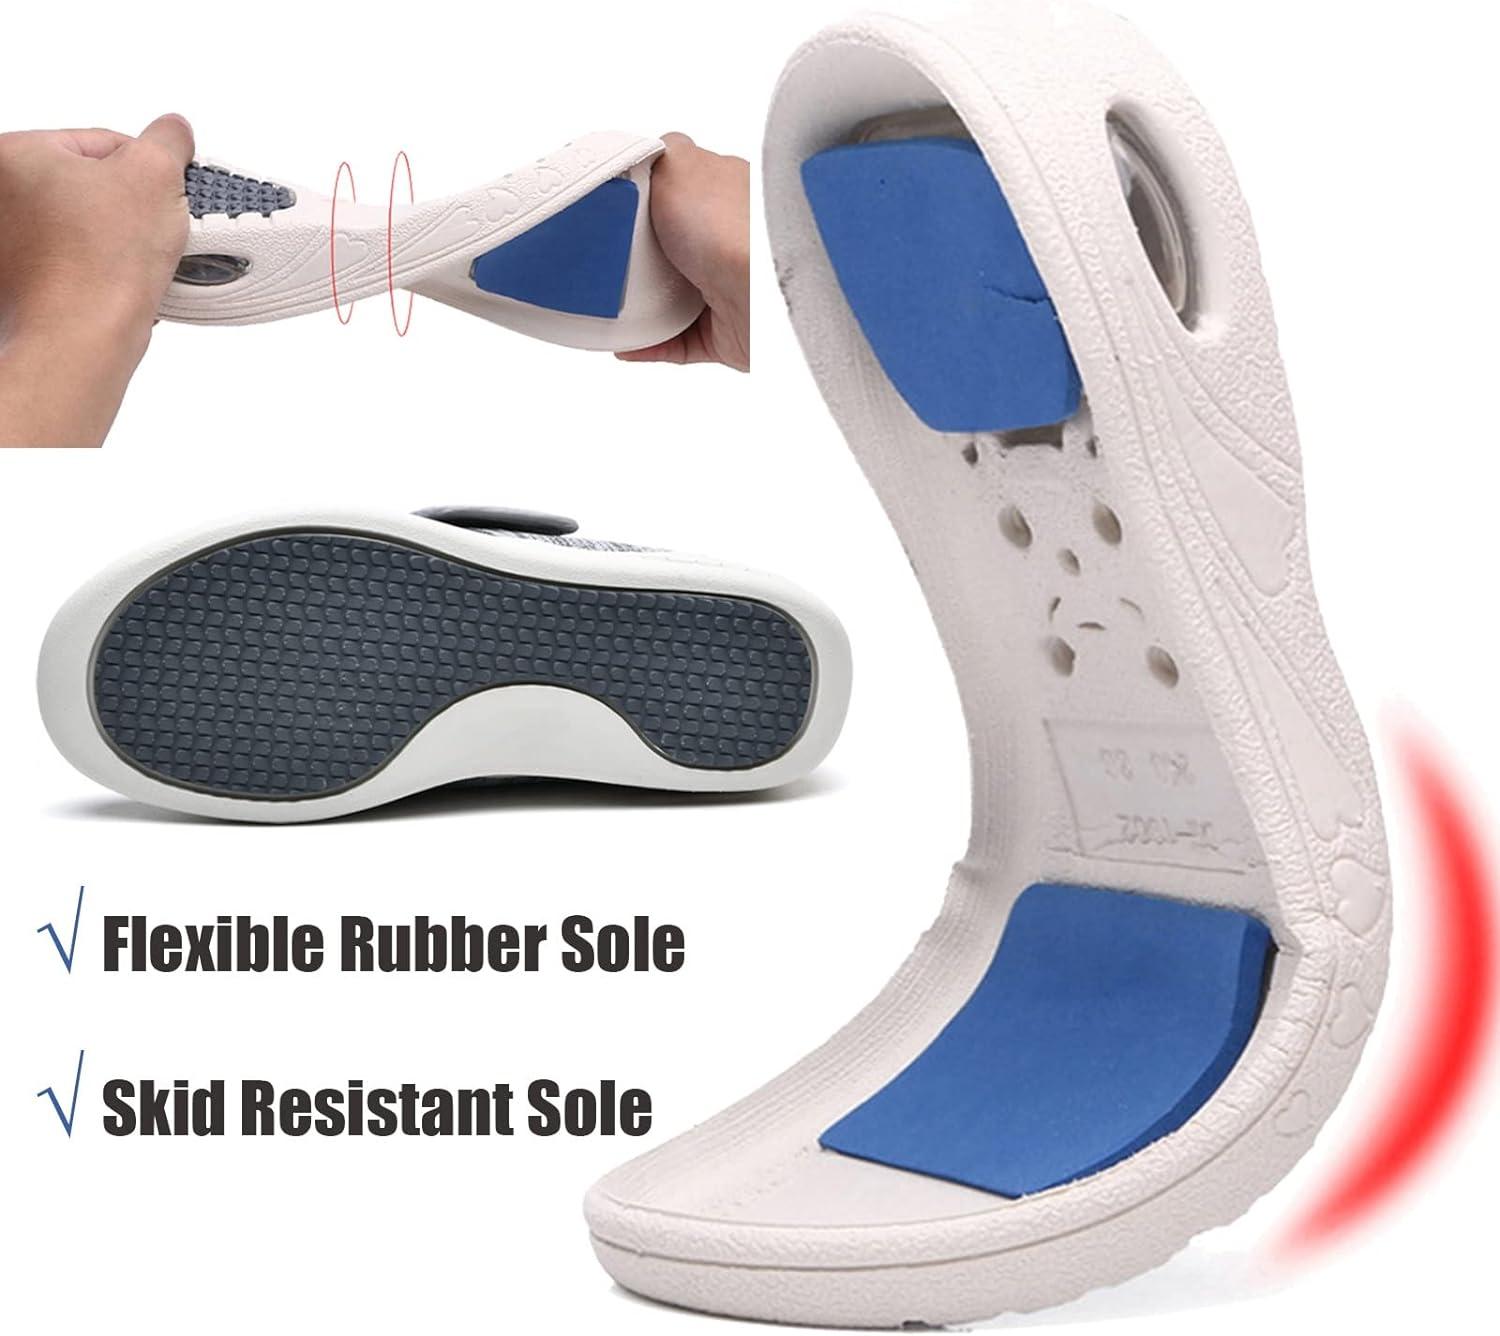 Shop Flexible, Cushioned Shoes for Diabetics